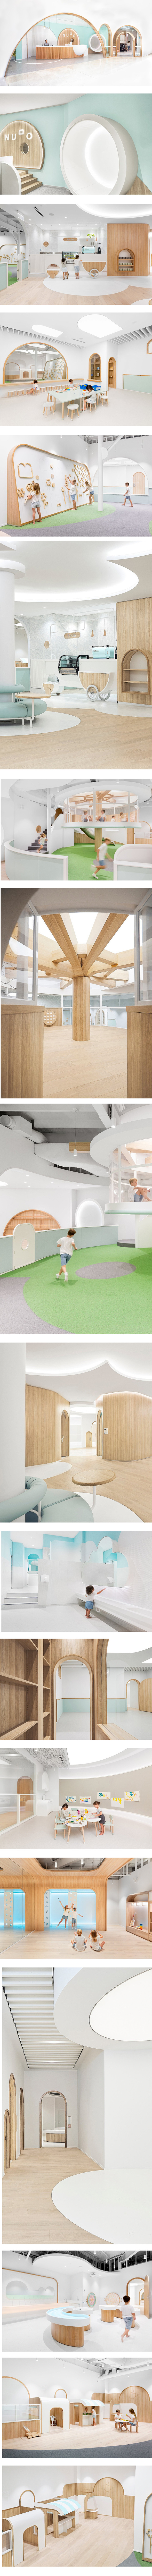 NUBO幼儿园-空间设计1